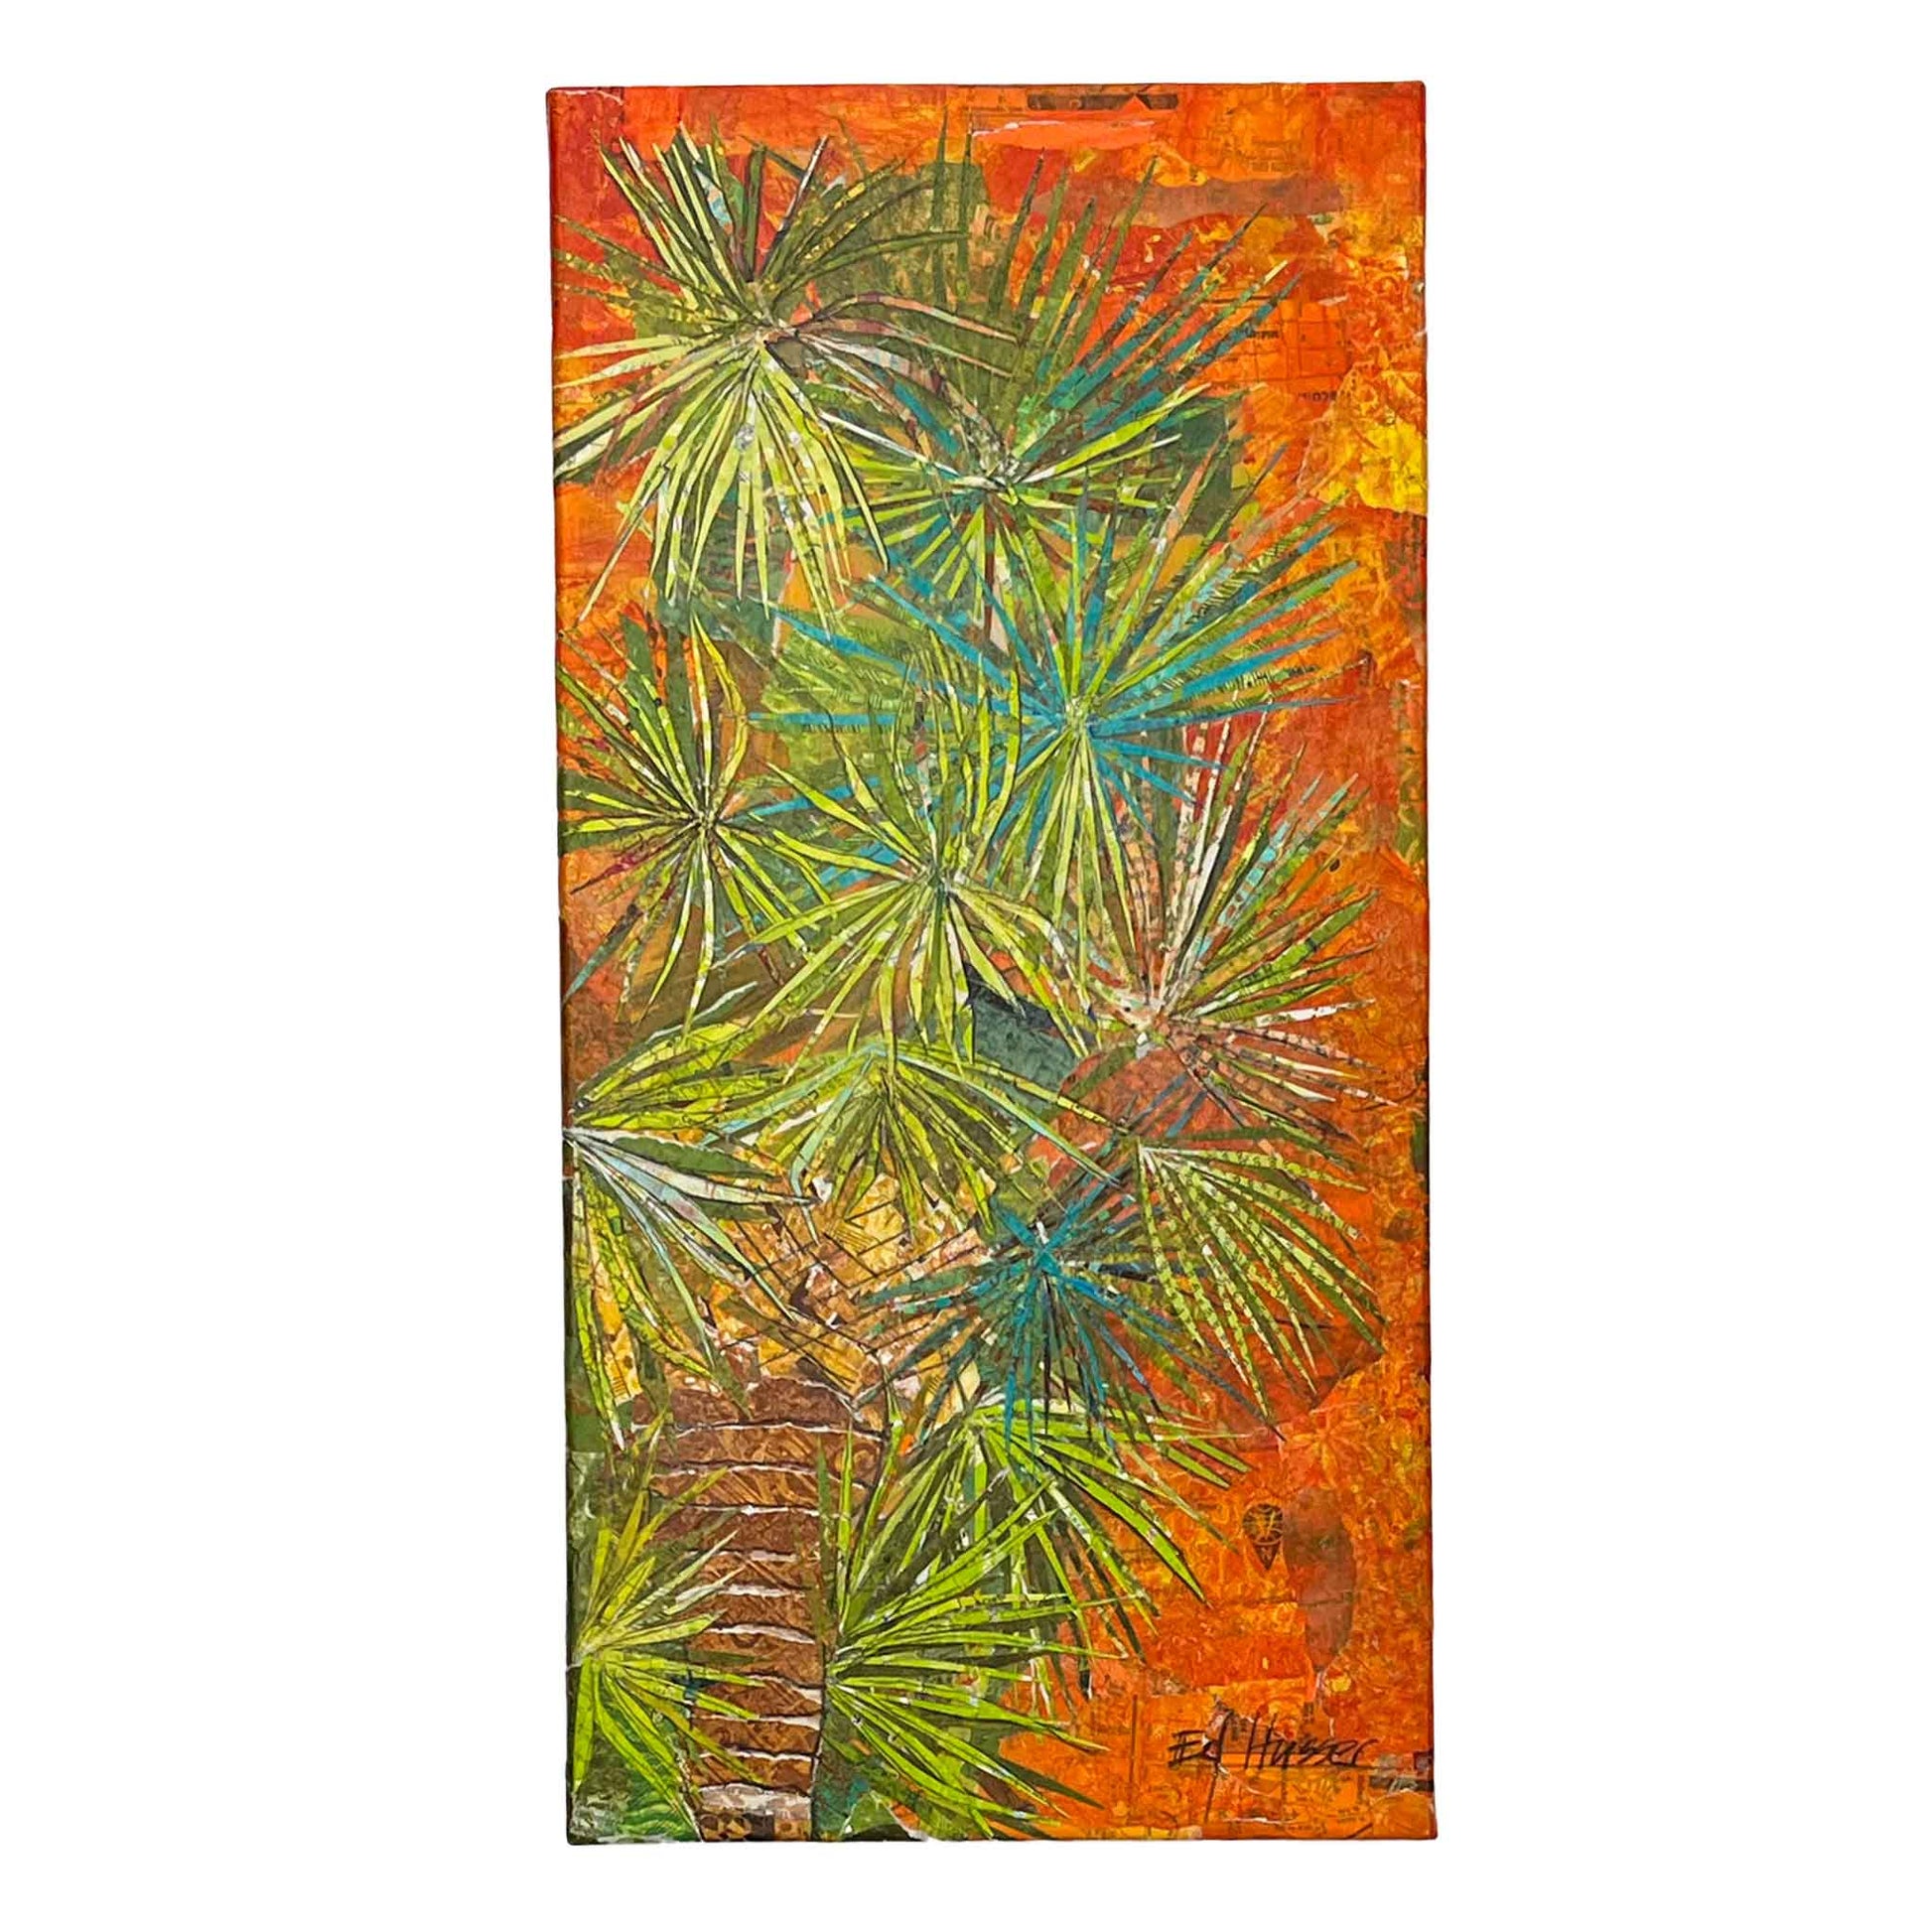 EMH Cabbage Palm Original Canvas